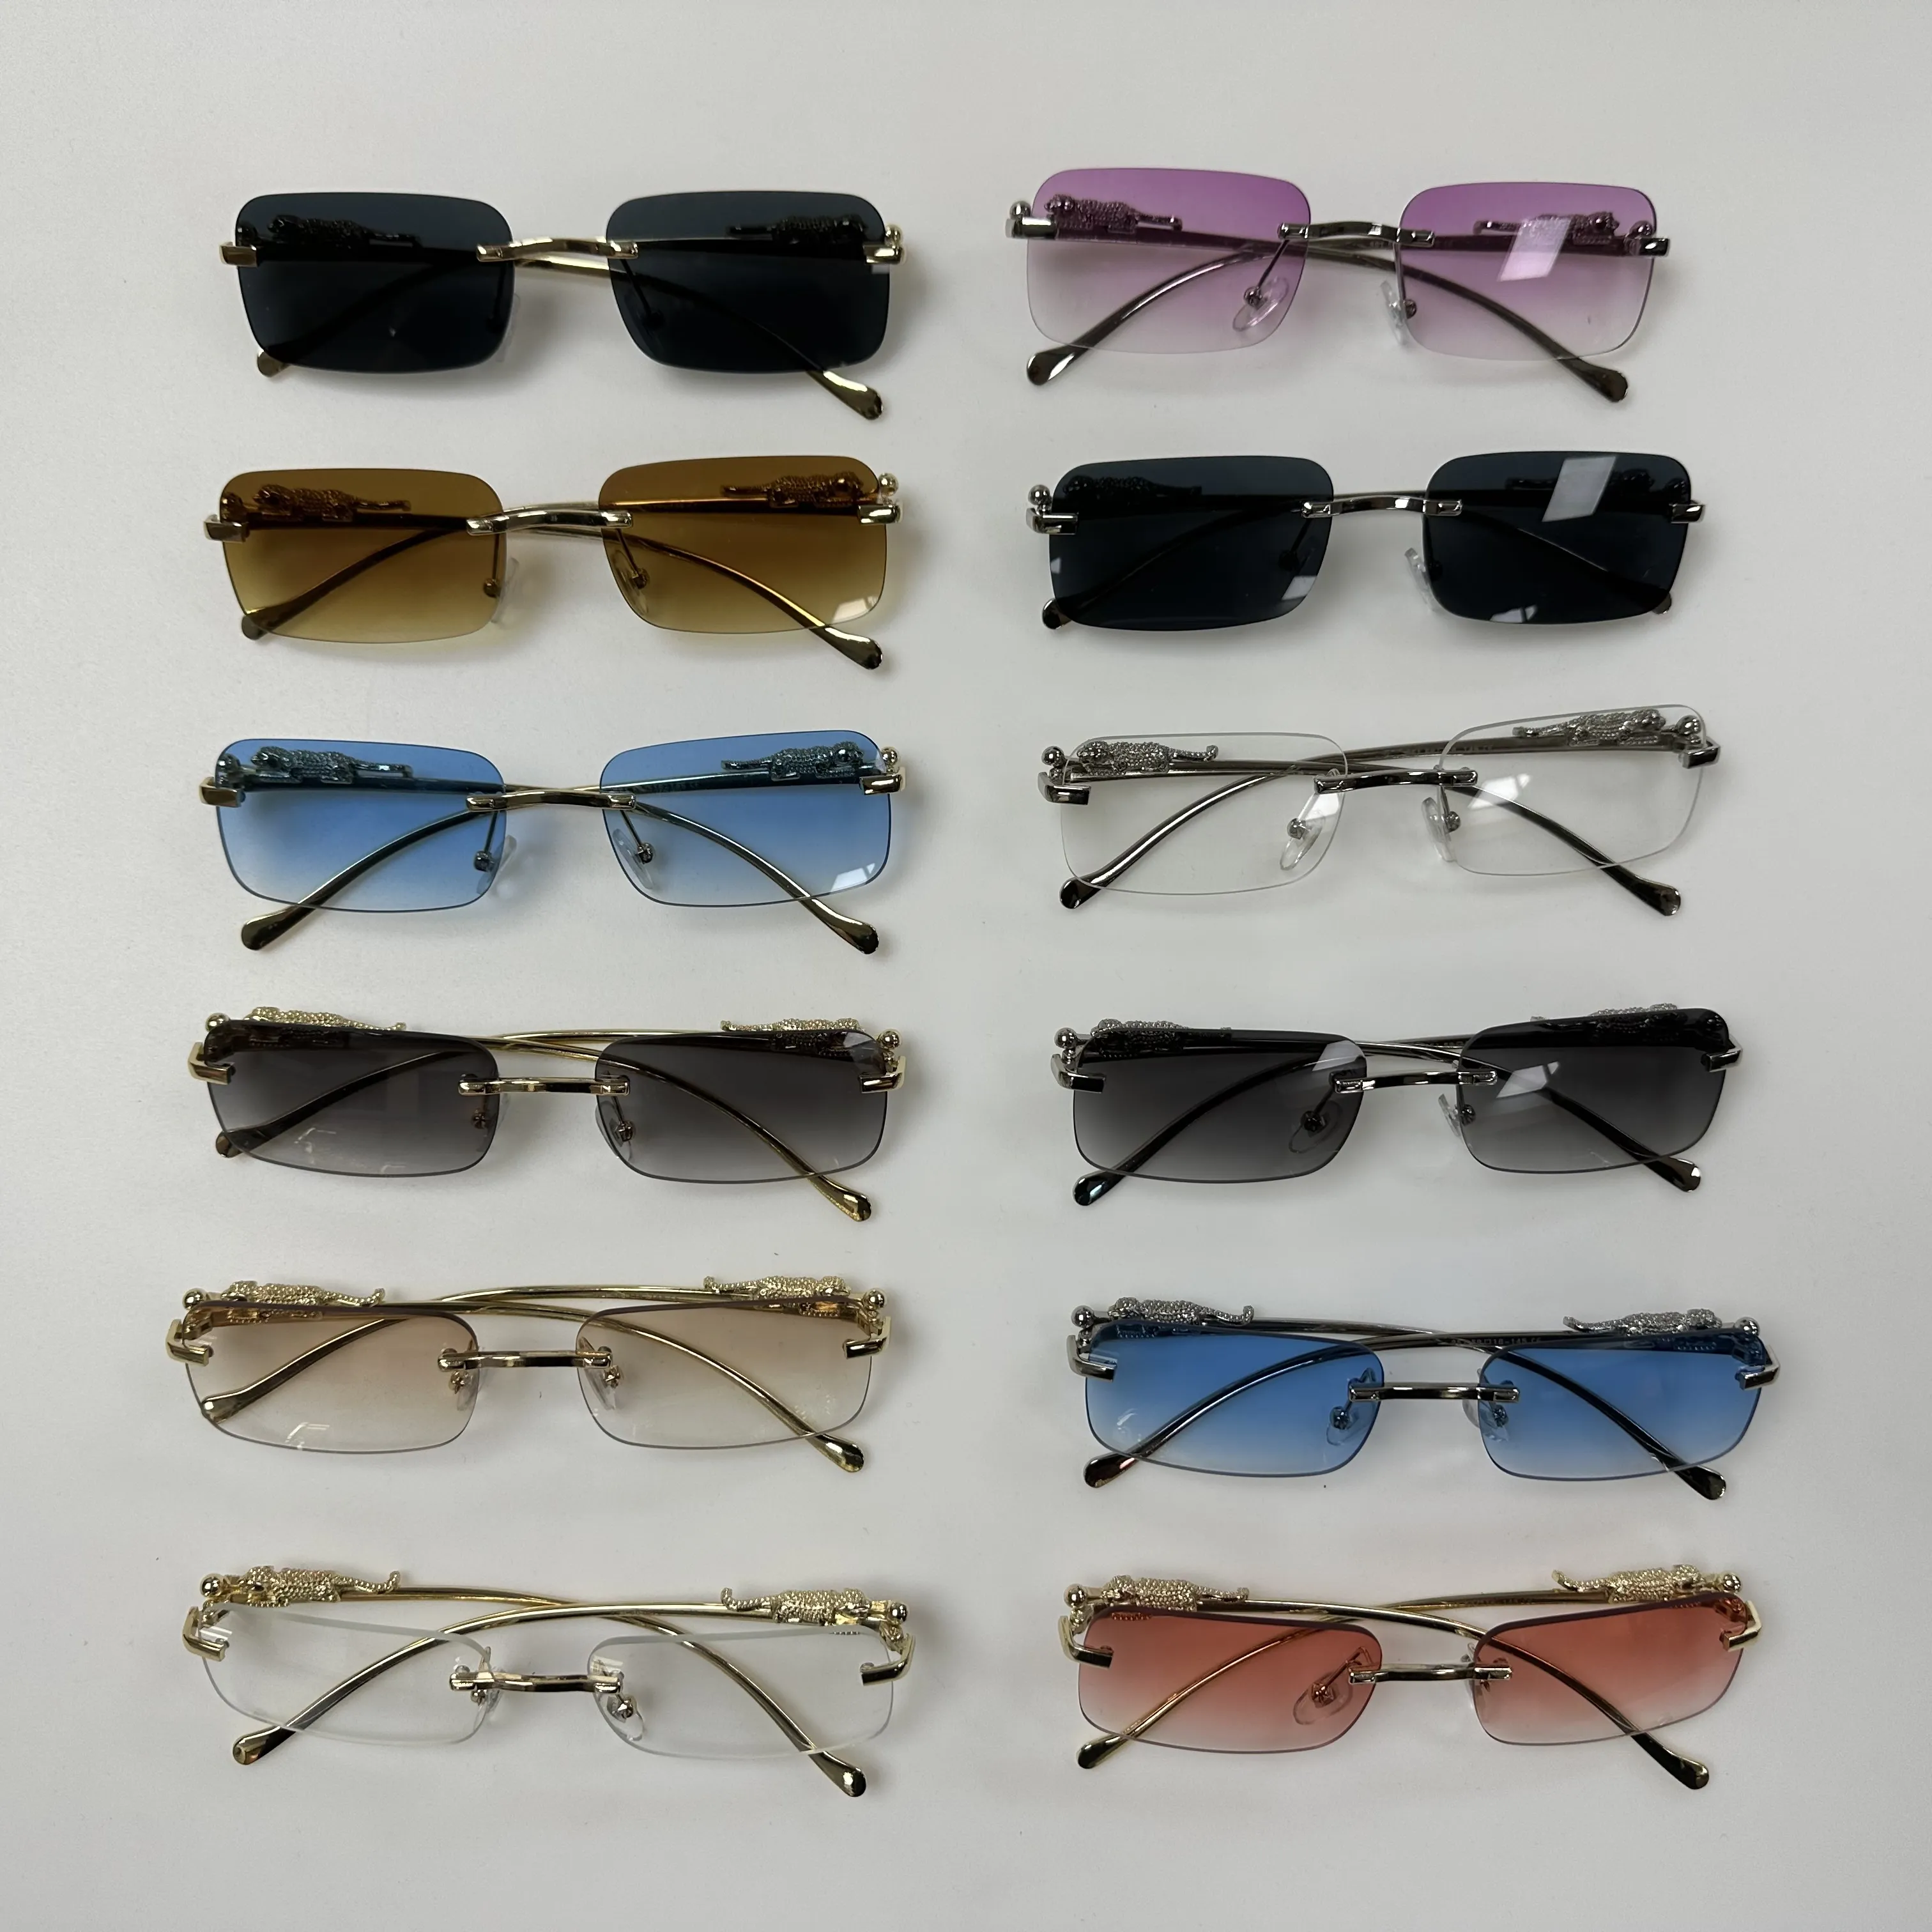 Sonnenbrille sonnen brille Männer benutzer definierte rahmenlose Panther Sonnenbrille randlose Luxus billige Förderung uv400 Sonnenbrillen Sonnenbrillen